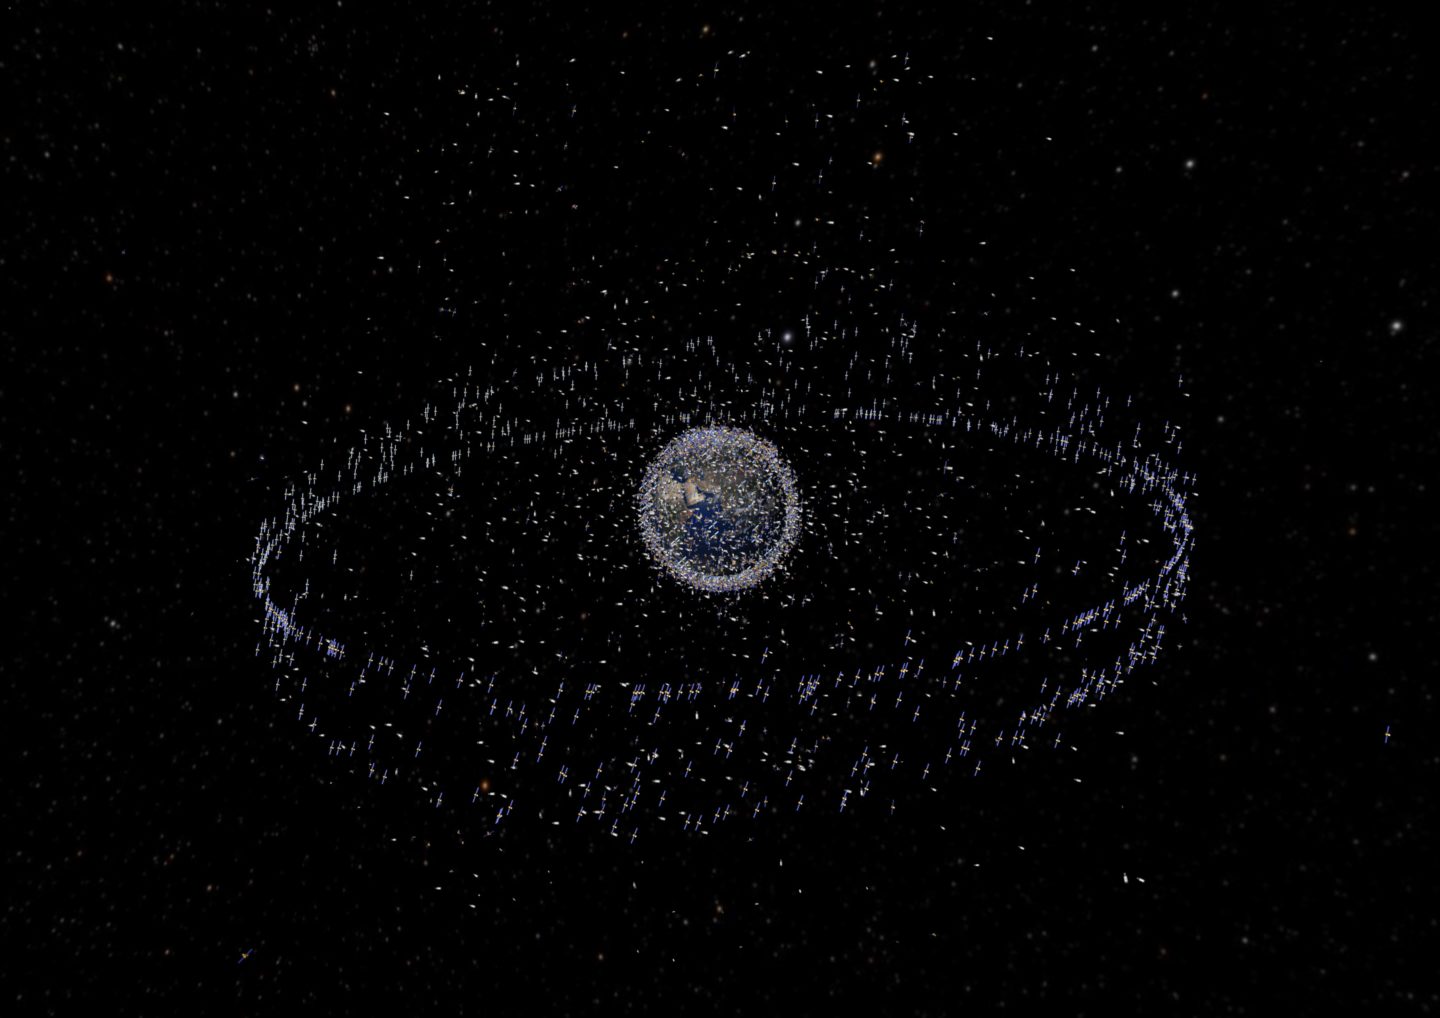 المركبة فوياجر 2 ترصد زيادة في كثافة الفضاء خارج المجموعة الشمسية